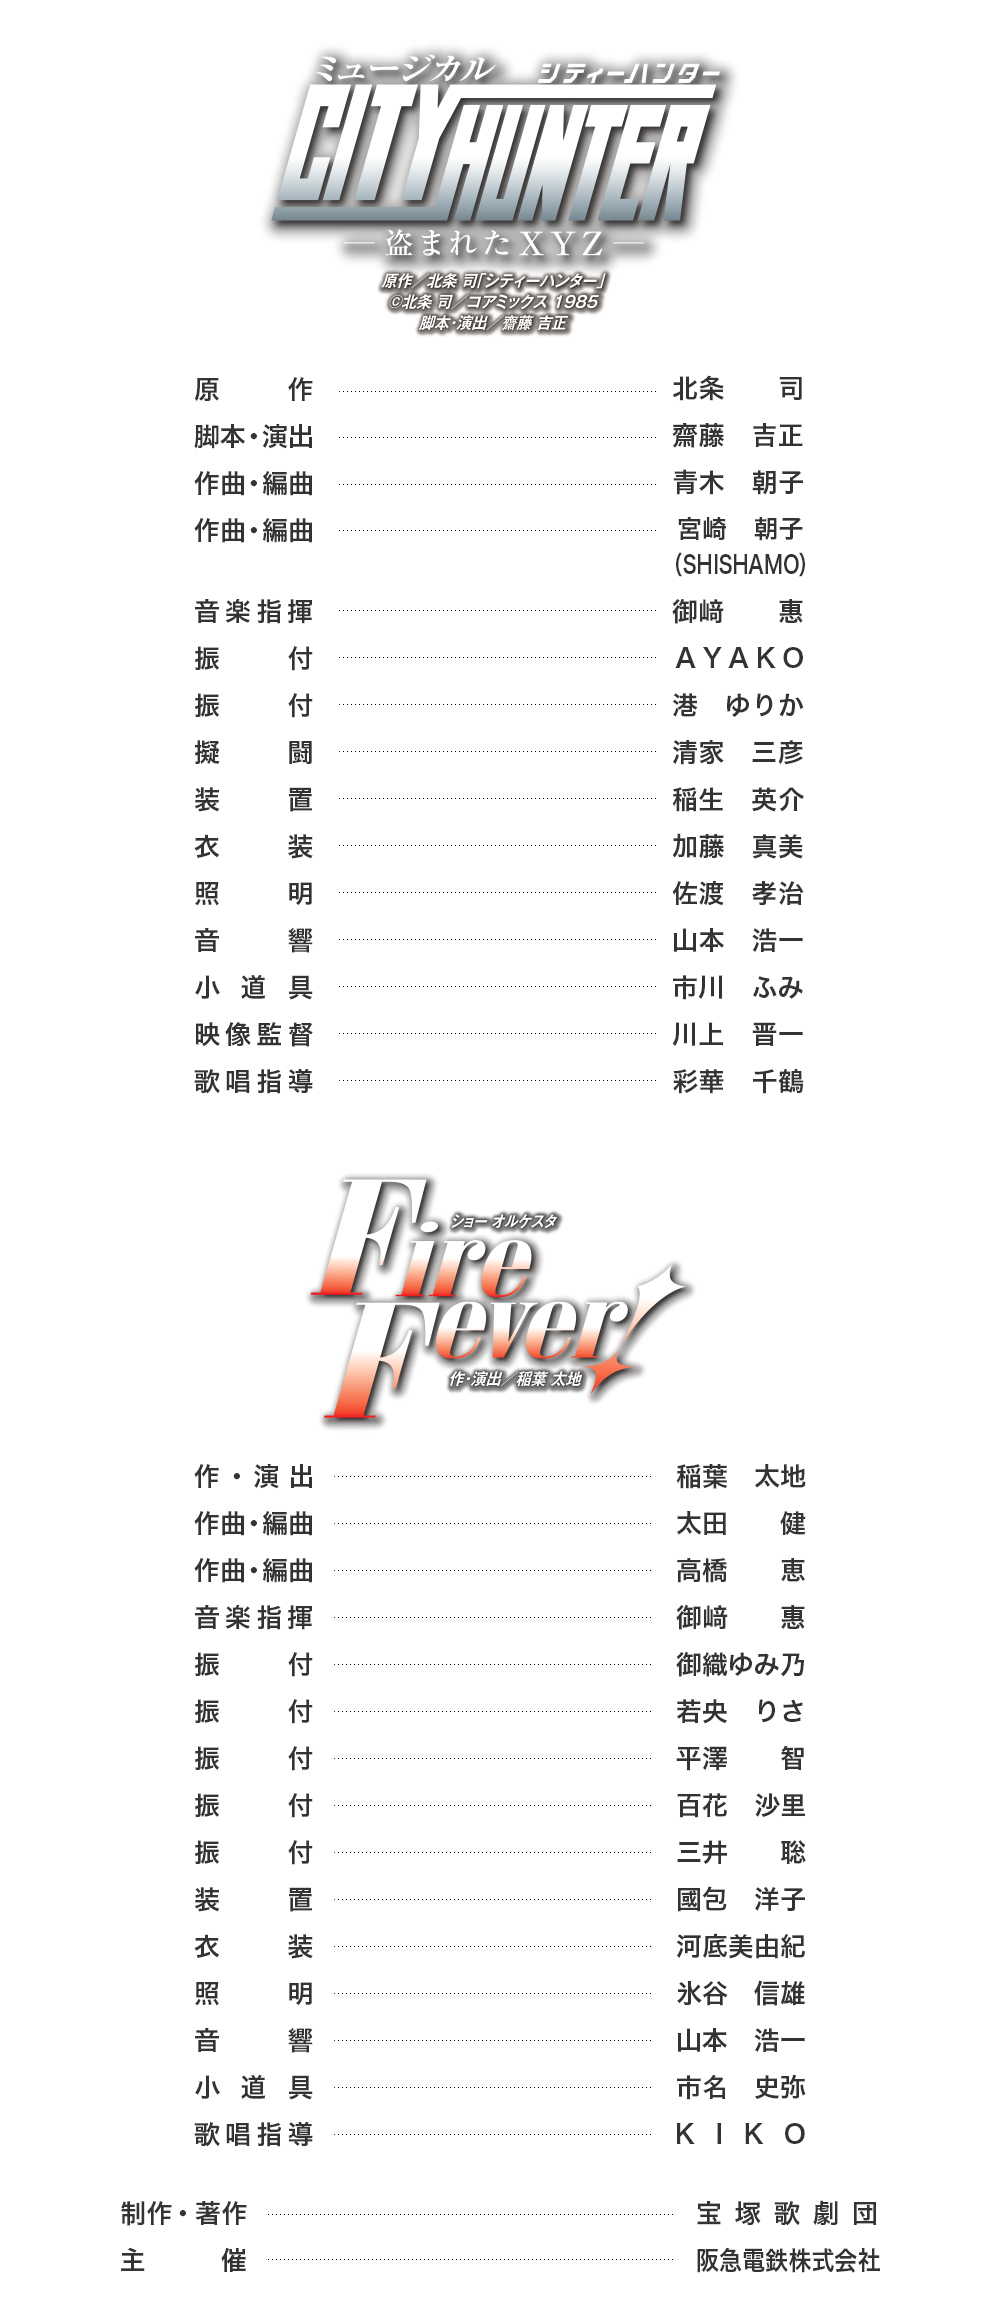 キャスト 雪組公演 City Hunter Fire Fever 宝塚歌劇公式ホームページ